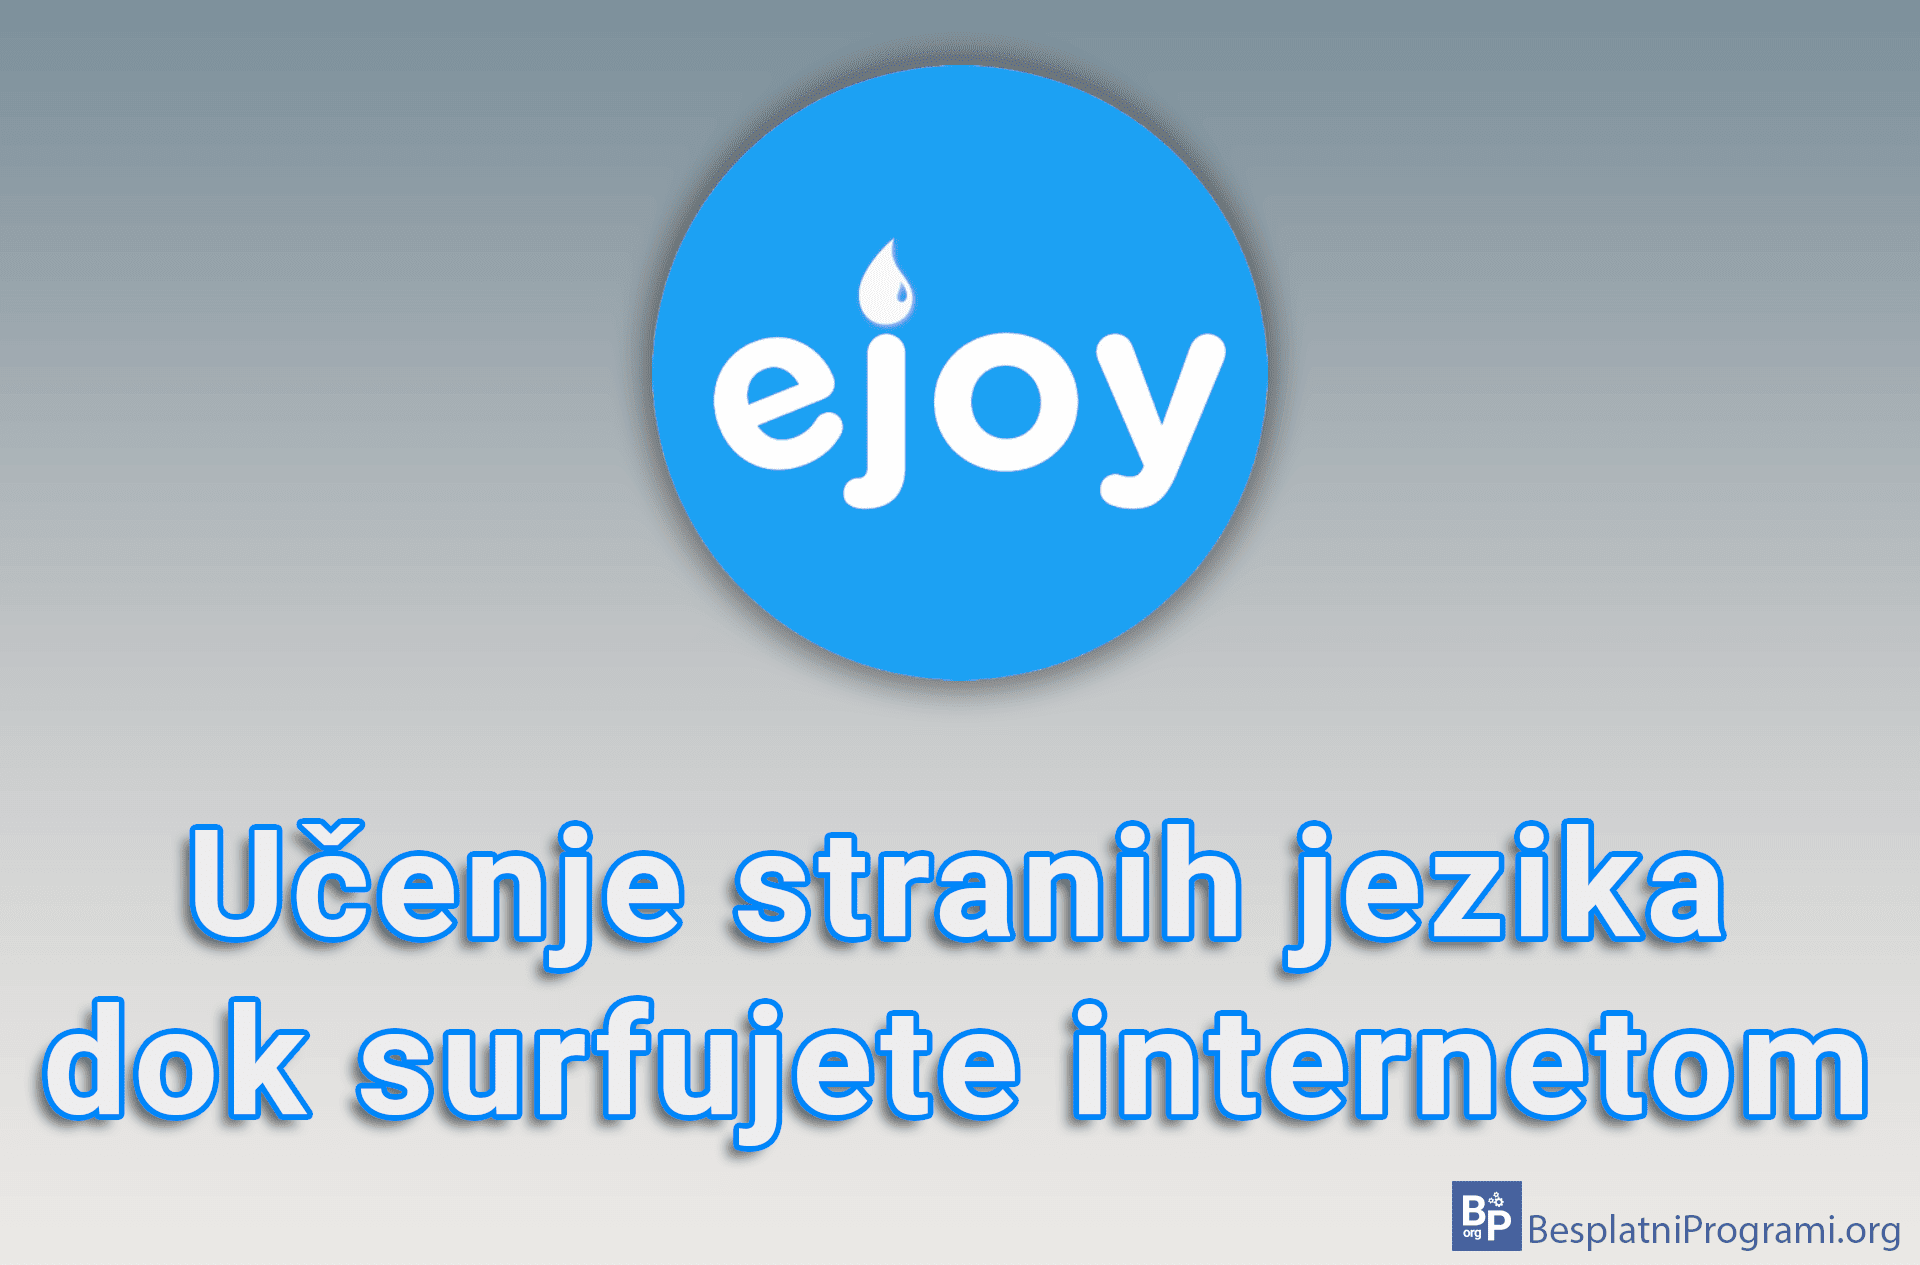 eJOY - Učenje stranih jezika dok surfujete internetom